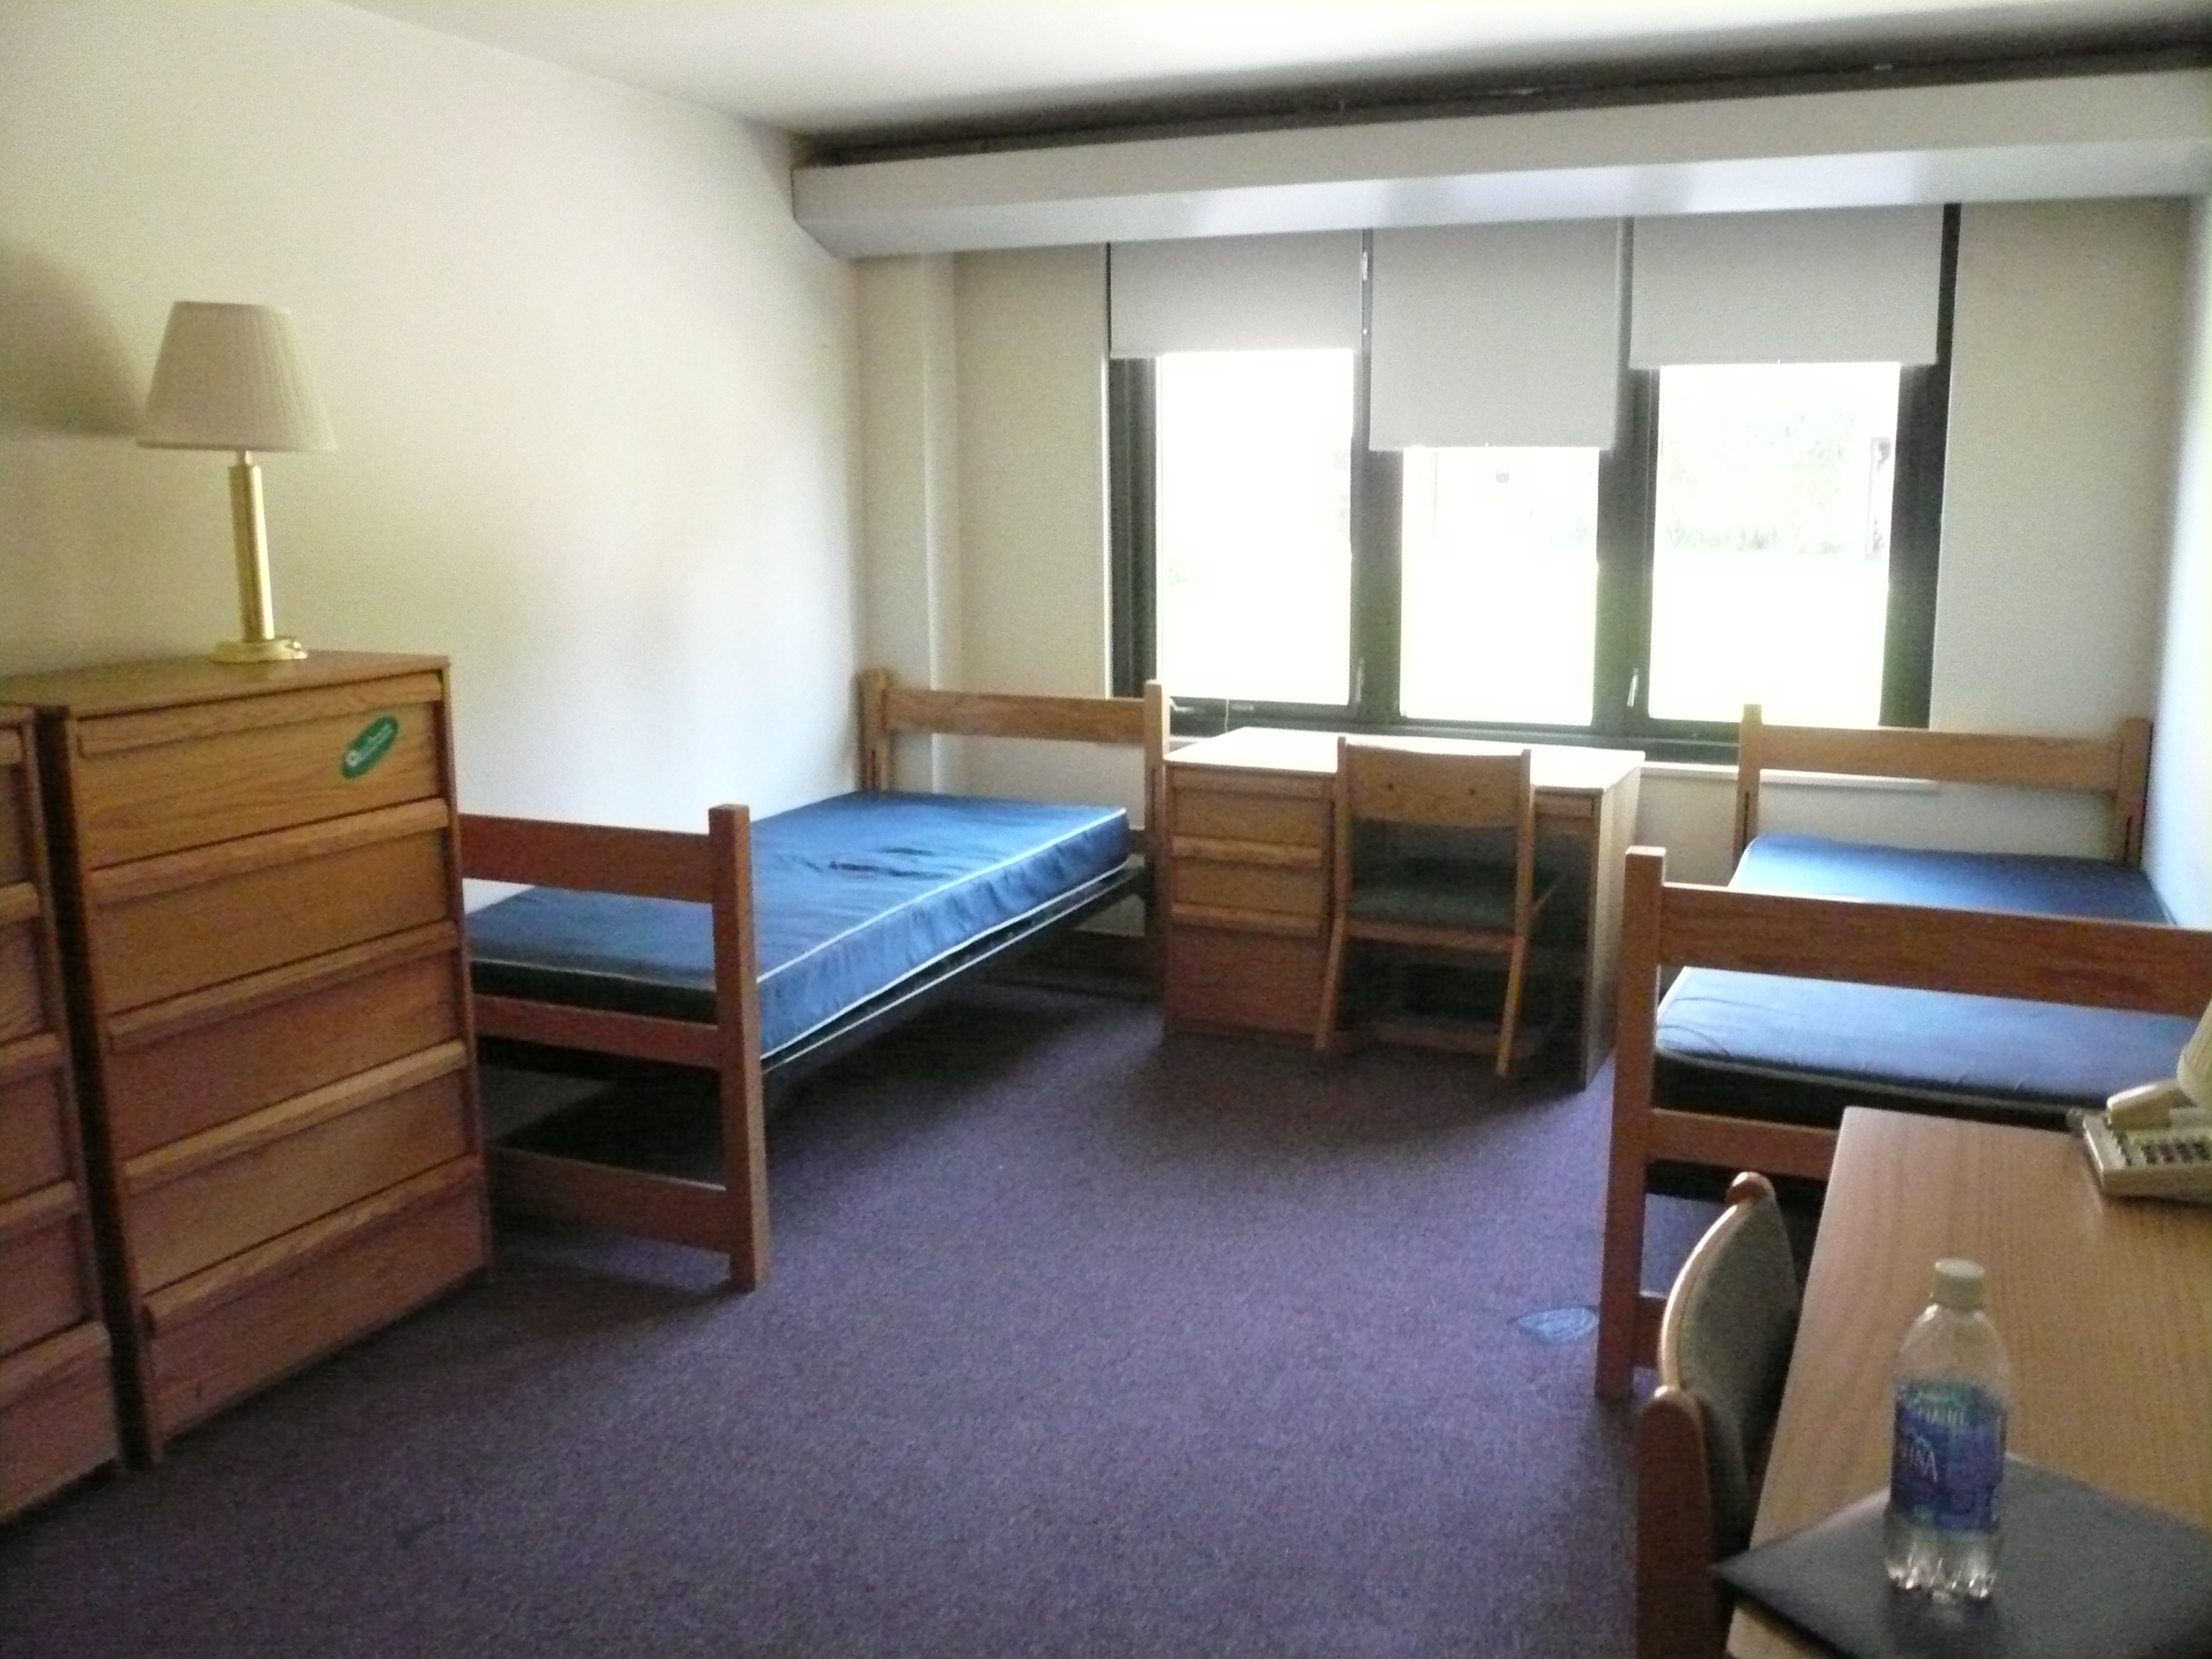 University dormitory accommodation